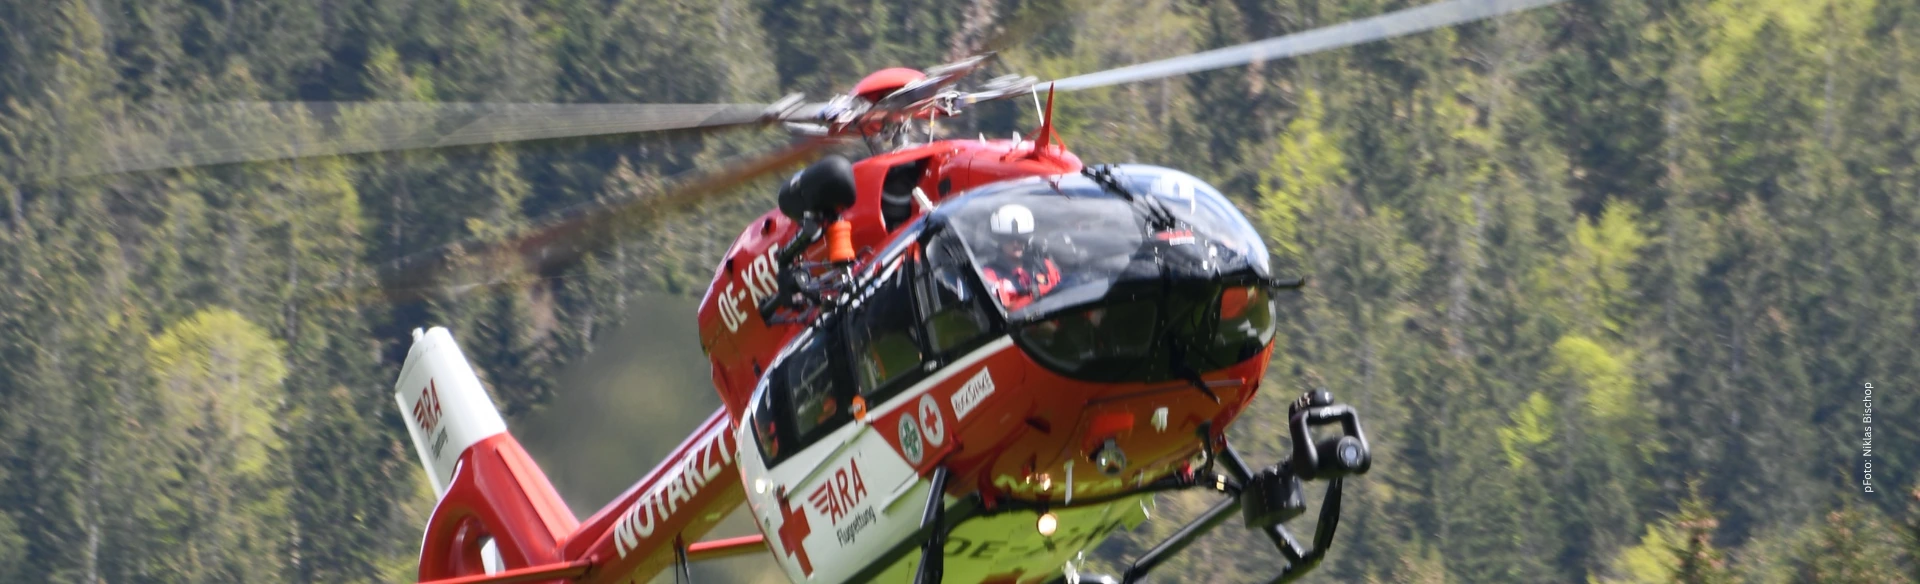 Fly For Fun Flugsicherheit: Rettungshubschrauber bei der raschen Landung in bewaldeten Gelände